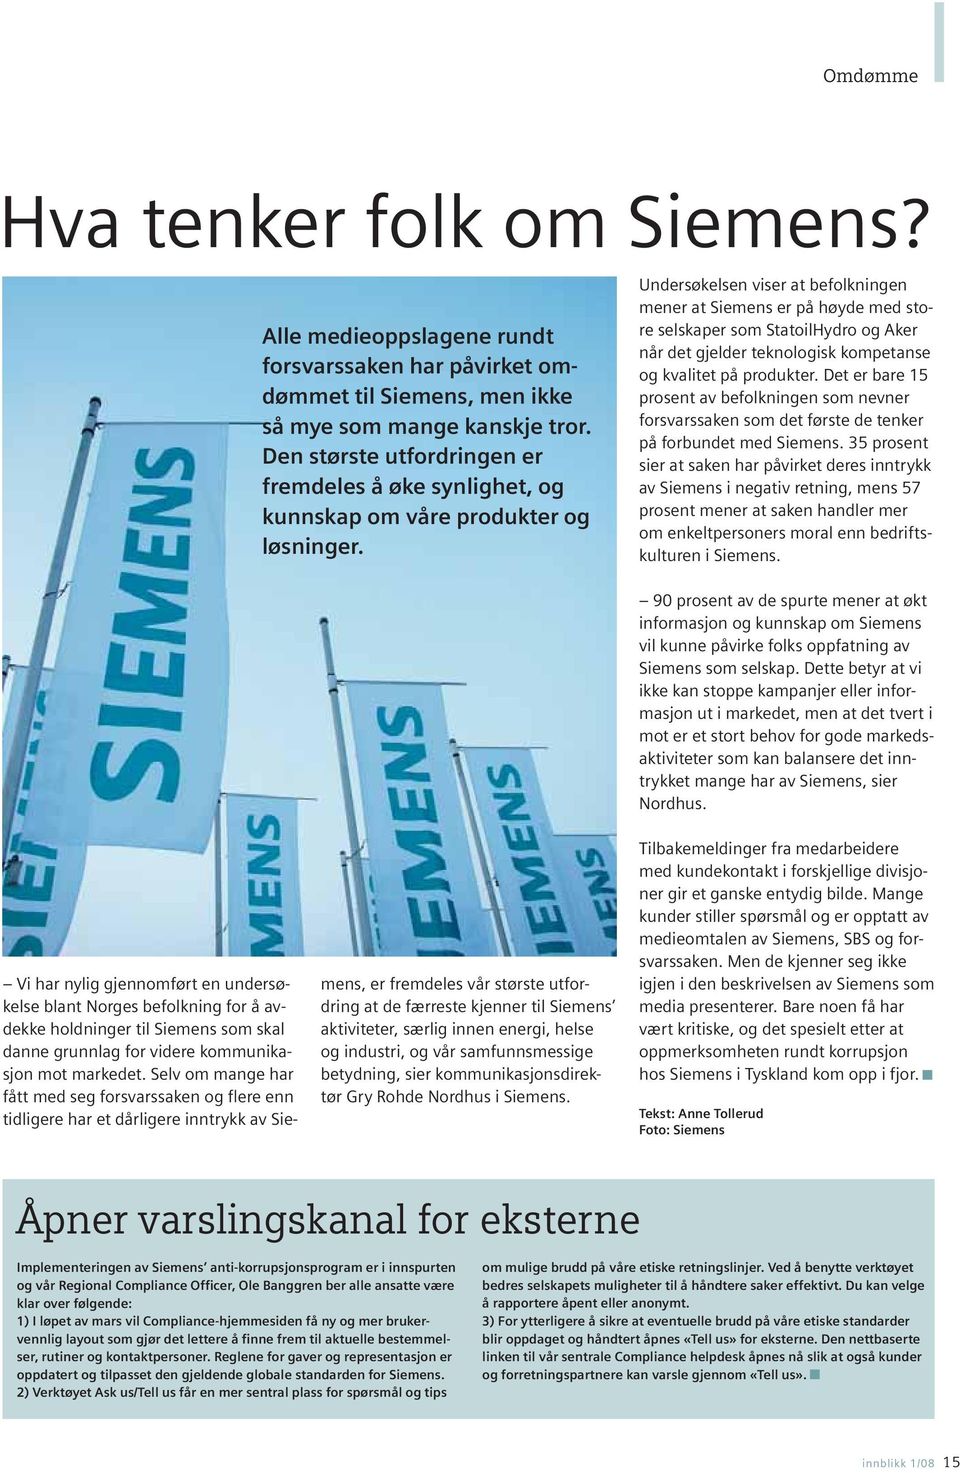 Undersøkelsen viser at befolkningen mener at Siemens er på høyde med store selskaper som StatoilHydro og Aker når det gjelder teknologisk kompetanse og kvalitet på produkter.